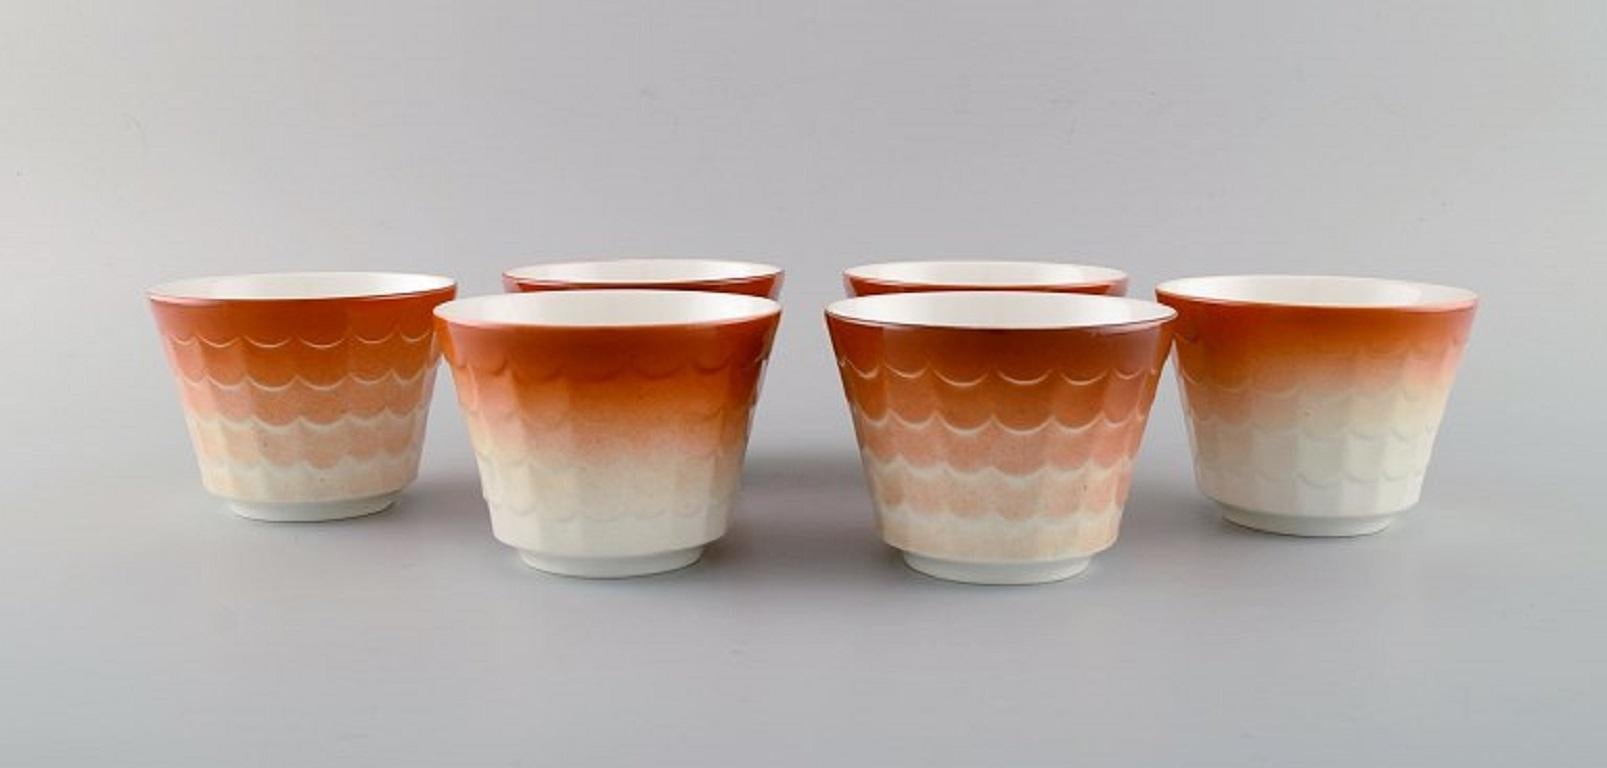 Wilhelm Kåge pour Gustavsberg. Six cache-pots en porcelaine. Design suédois, années 1960.
Mesures : 10.5 x 8 cm.
En parfait état.
Estampillé.